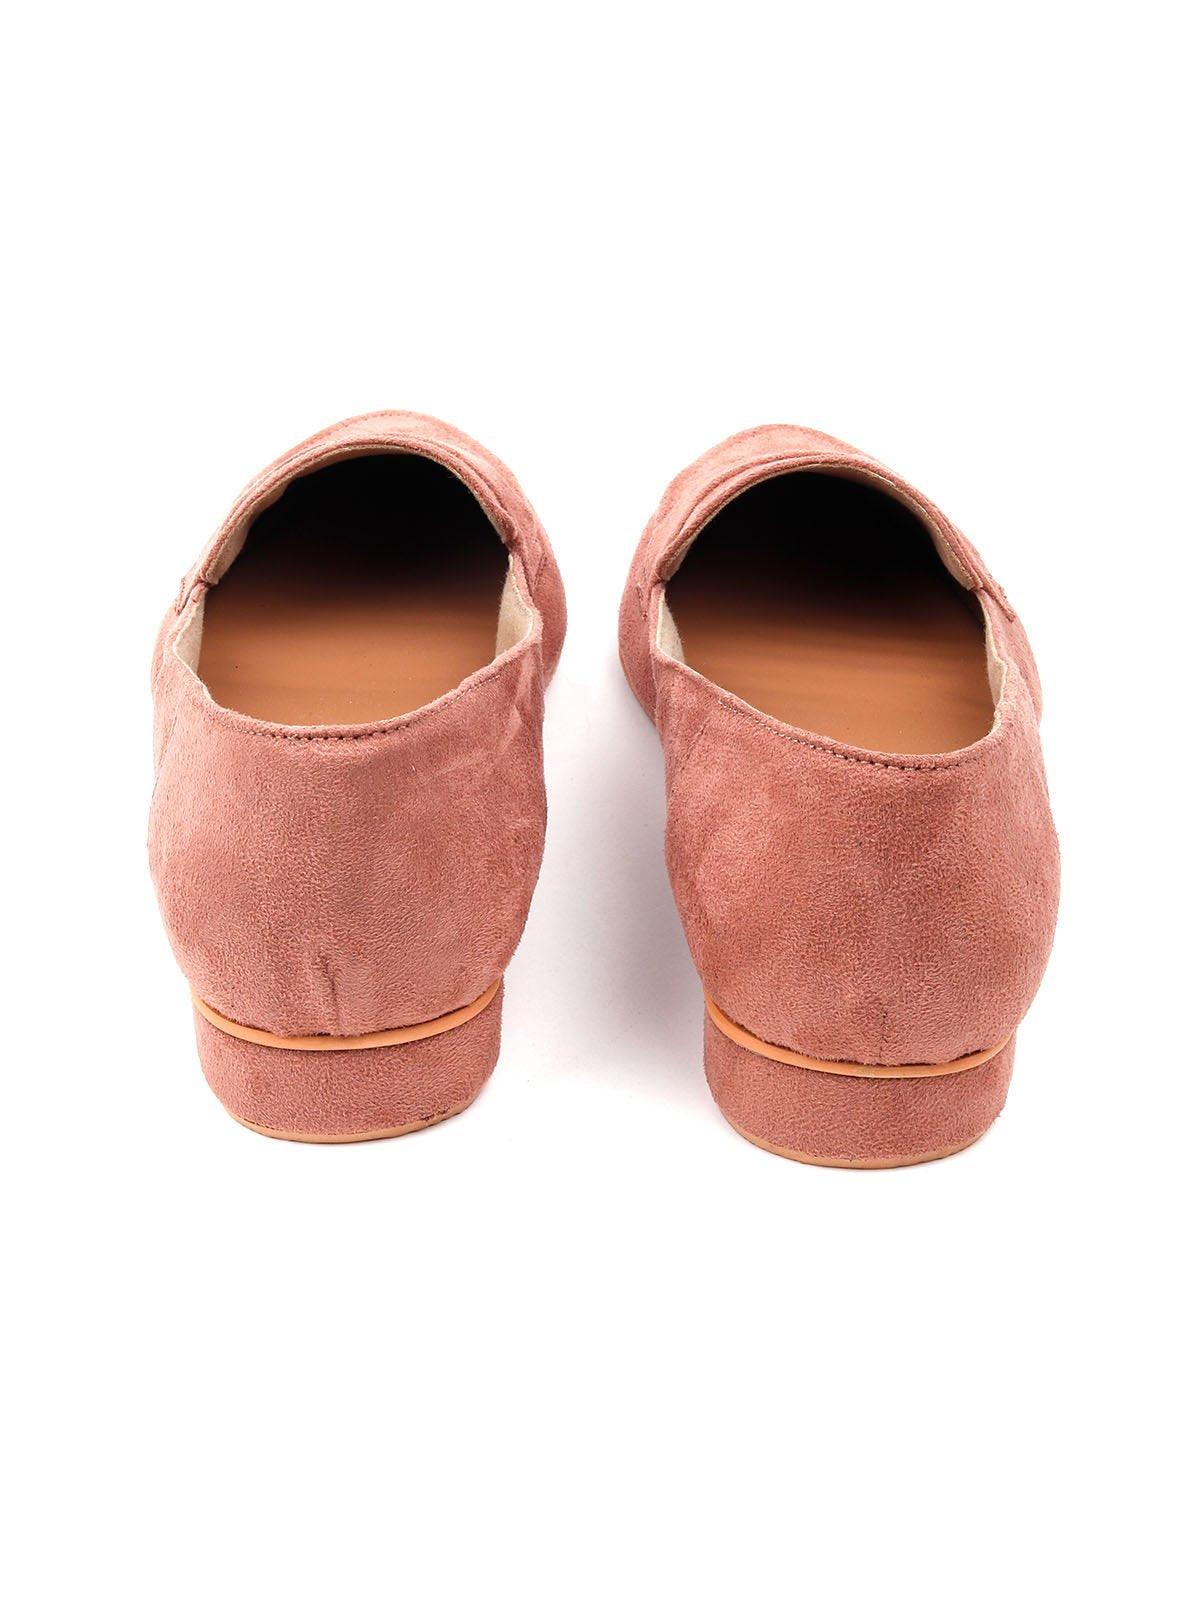 Dust Pink Suede Flat Women Footwear - Odette